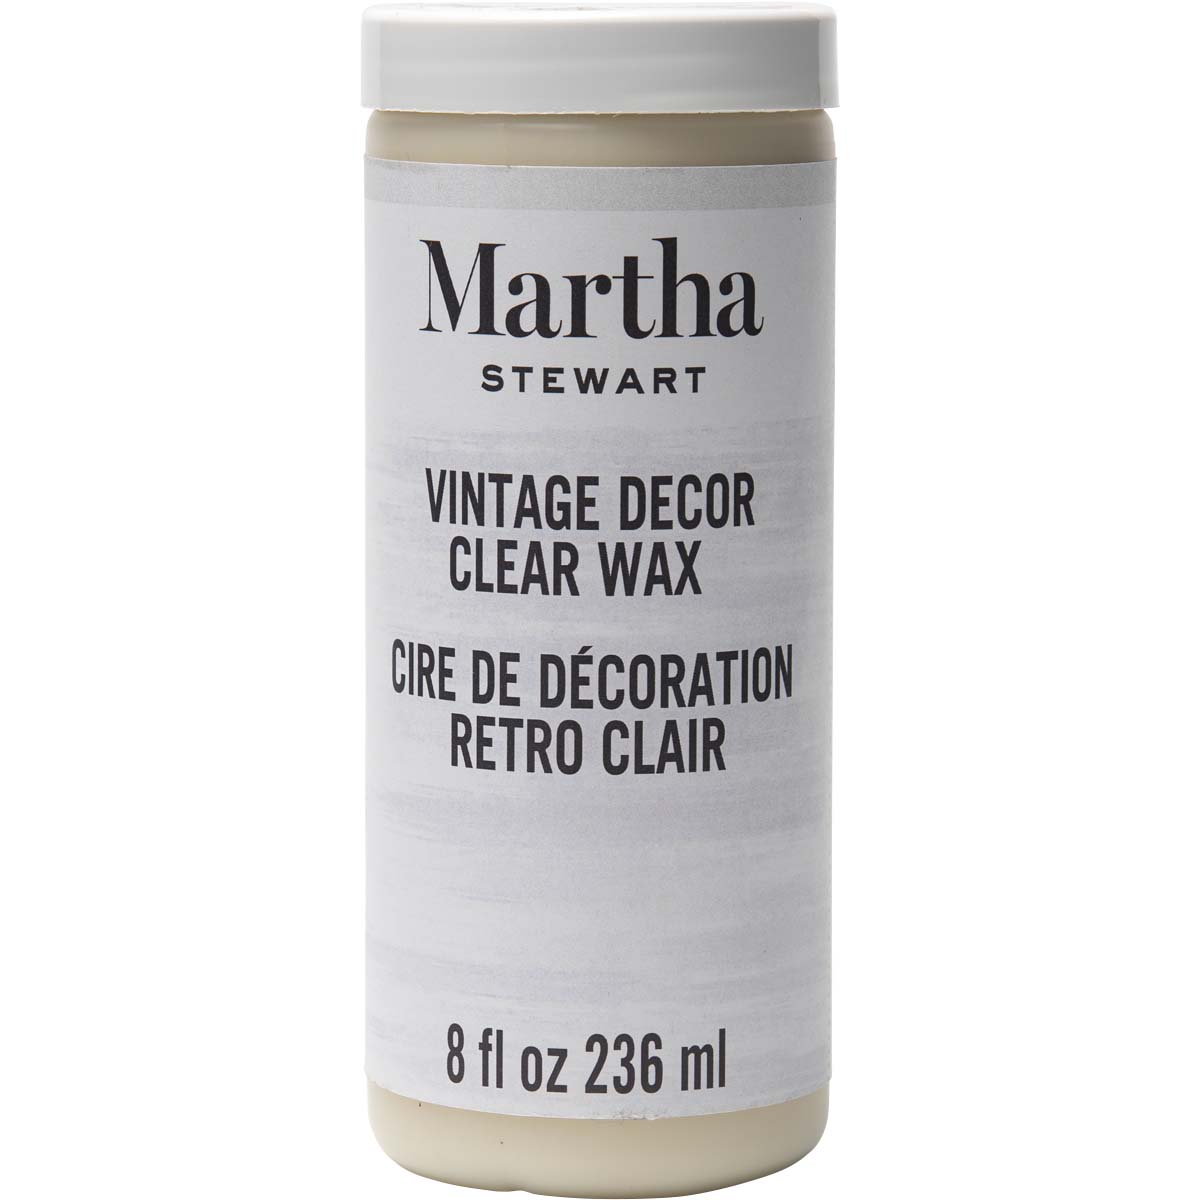 MARTHA STEWART VINTAGE DECOR 8 OZ. CLEAR WAX